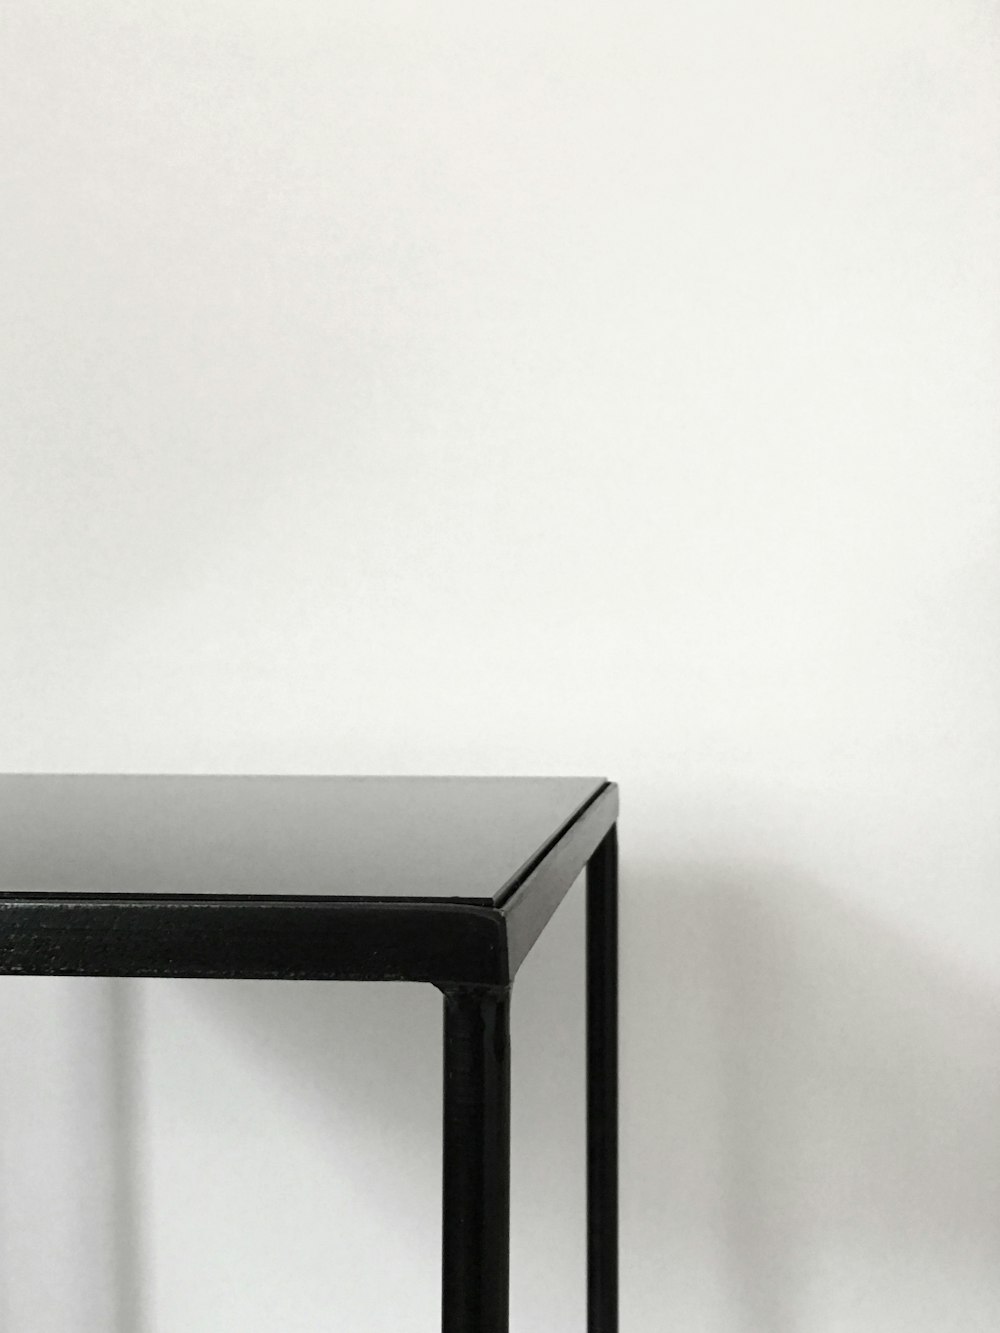 mesa de metal negro cerca de una pared blanca